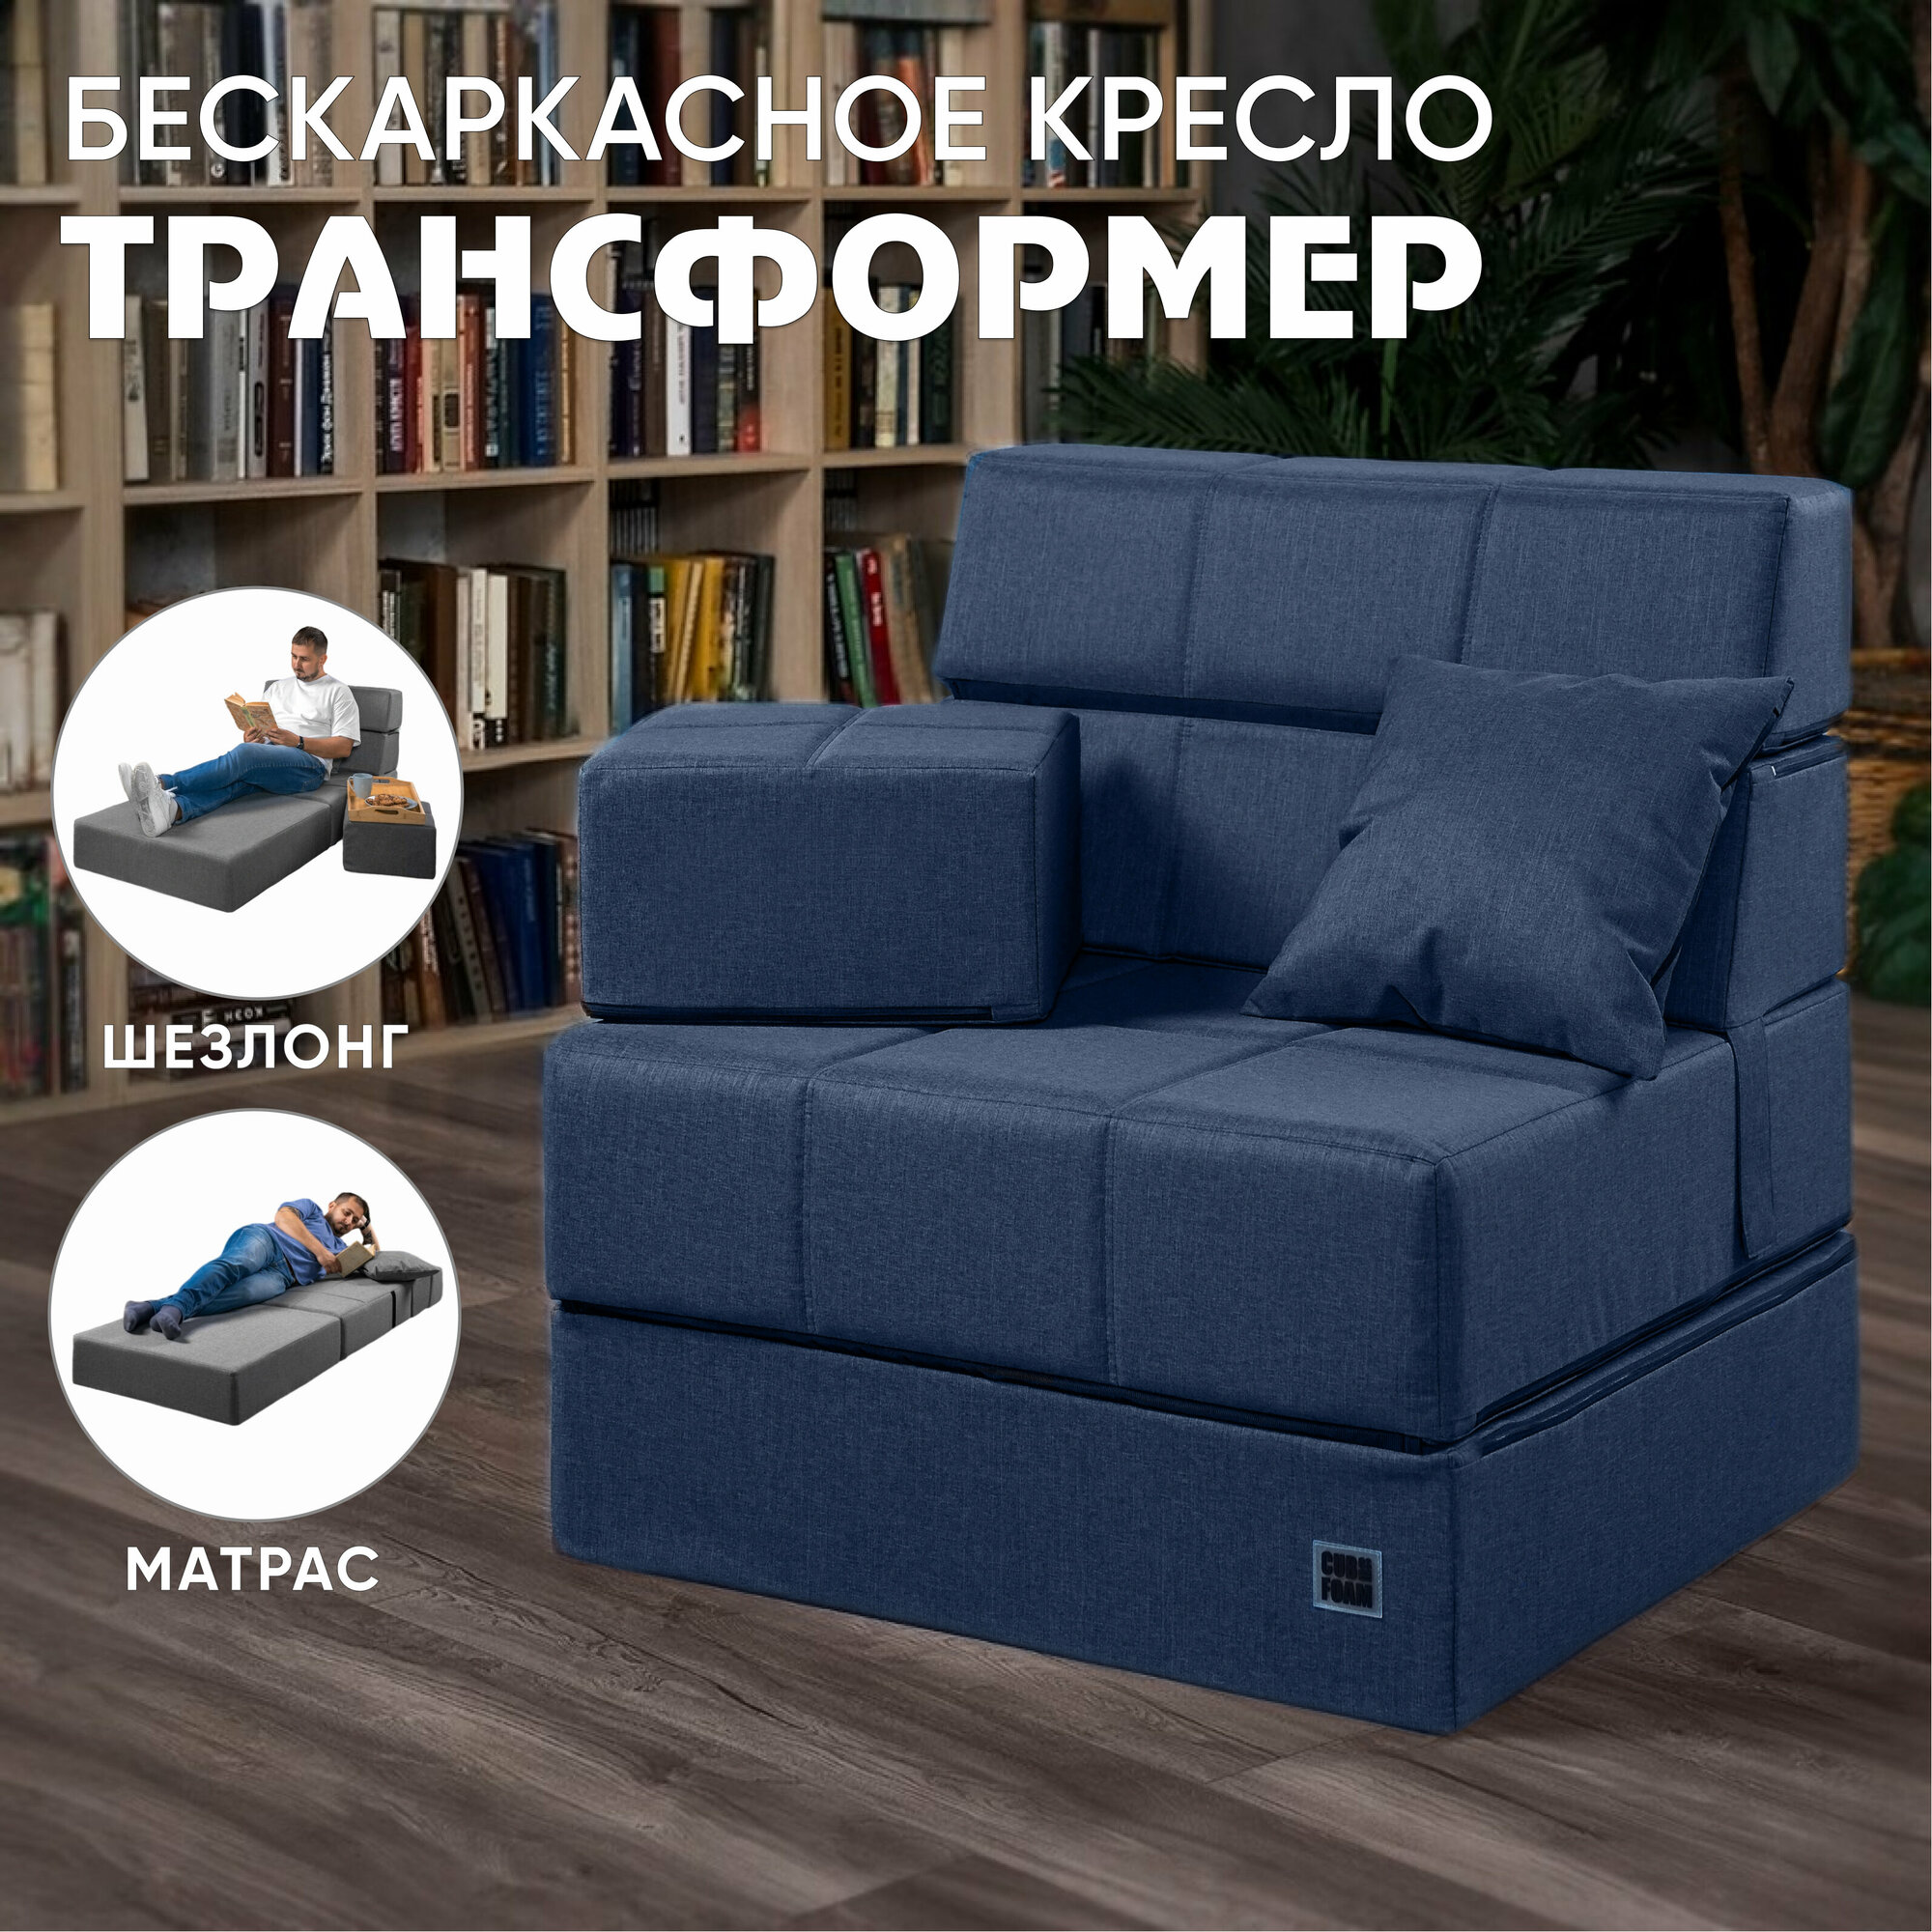 Бескаркасный синий диван MaxiCubes